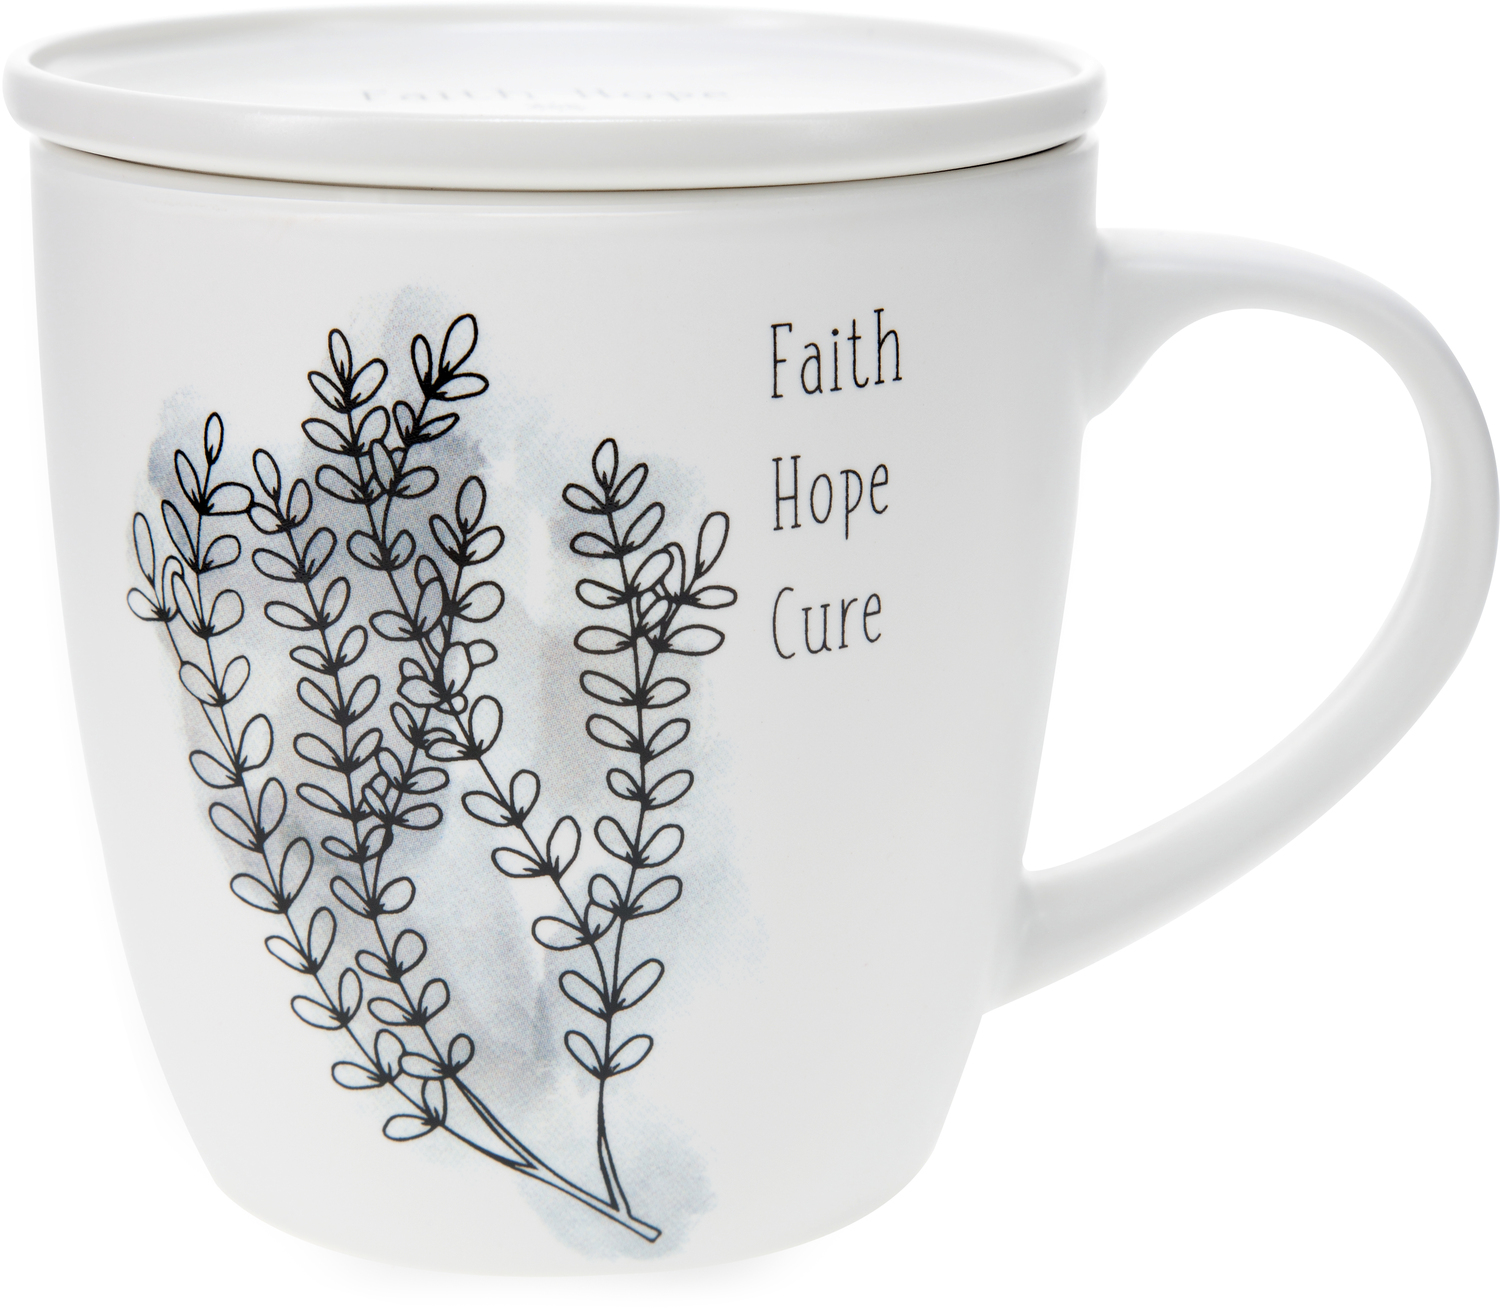 Faith Hope Cure by Faith Hope and Healing - Faith Hope Cure - 17 oz Cup with Coaster Lid